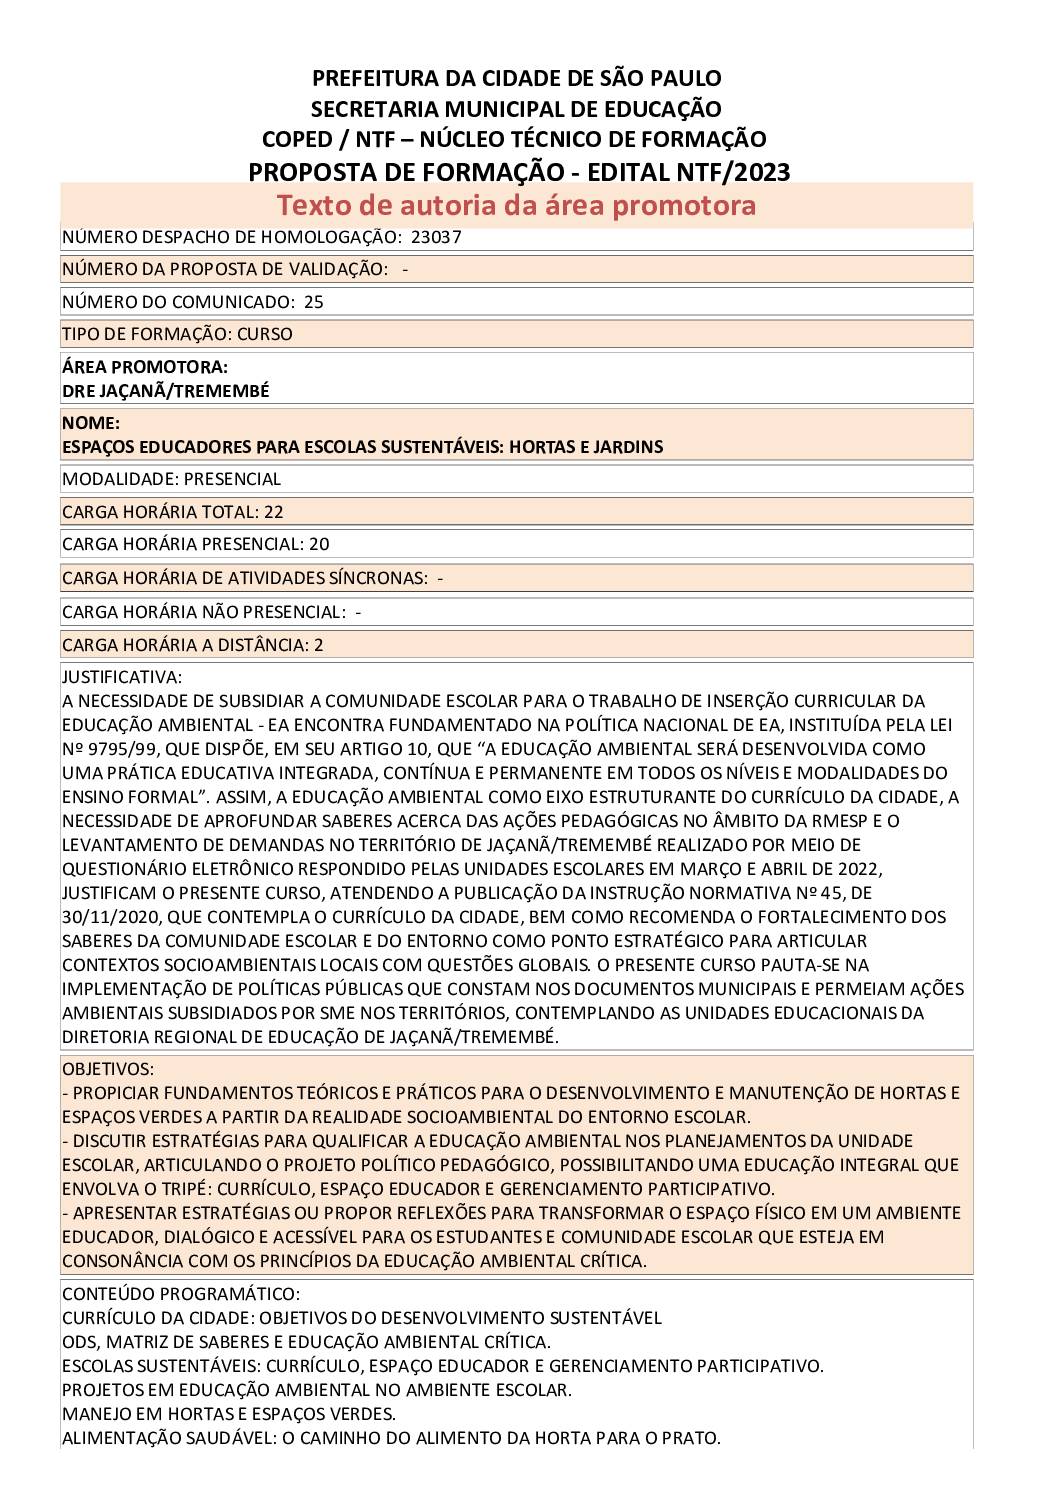 PDF com informações sobre o curso: ESPAÇOS EDUCADORES PARA ESCOLAS SUSTENTÁVEIS: HORTAS E JARDINS